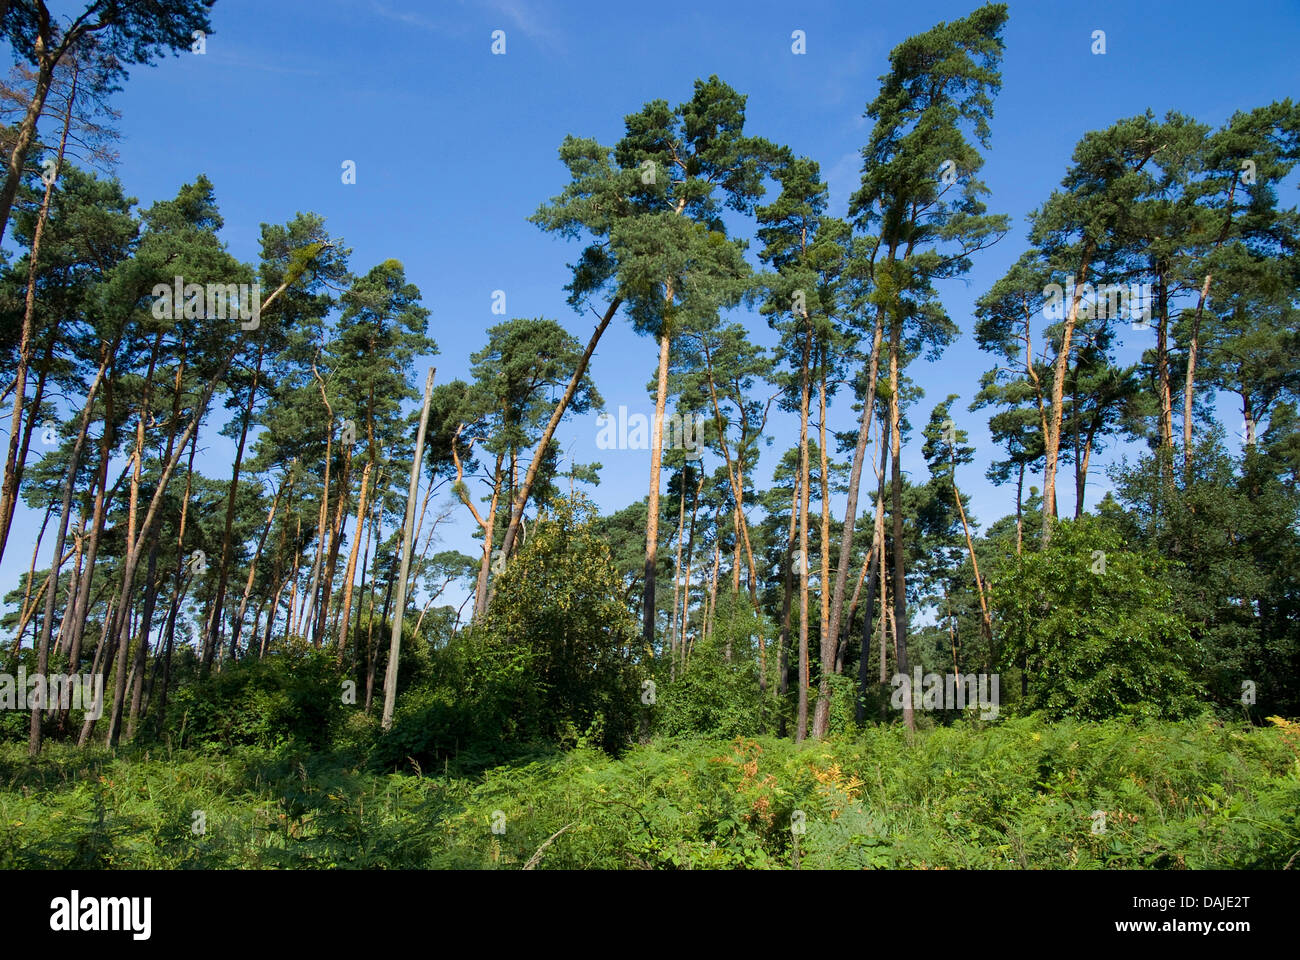 Pin sylvestre, le pin sylvestre (Pinus sylvestris), bois de pin, Allemagne Banque D'Images